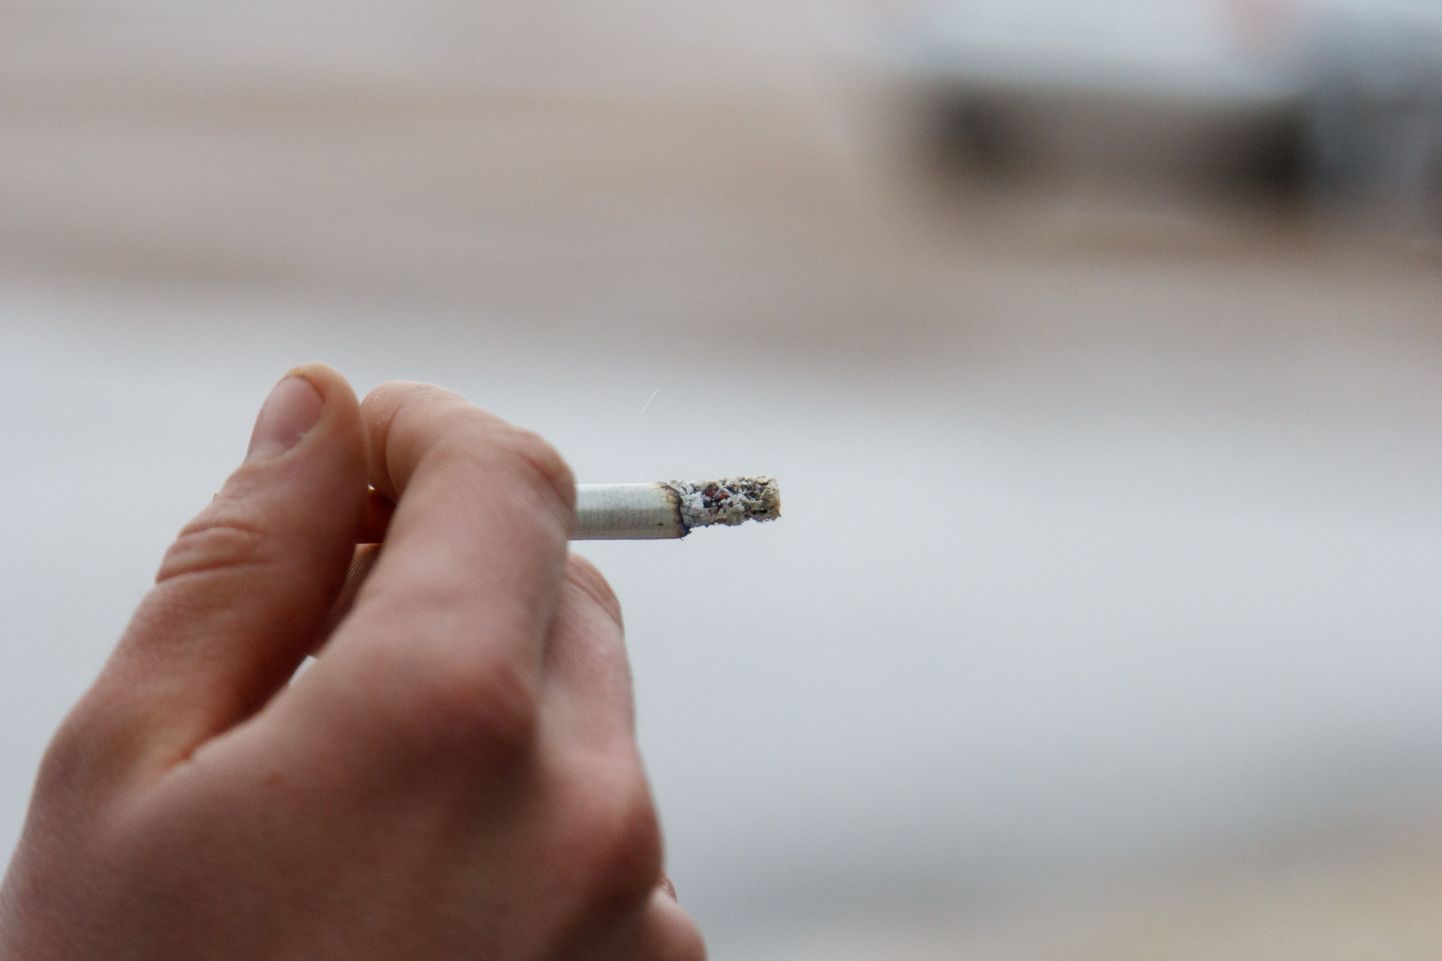 Soome valitsus tahab keelata suitsetamise autos, kus on alla 15 aastane laps.